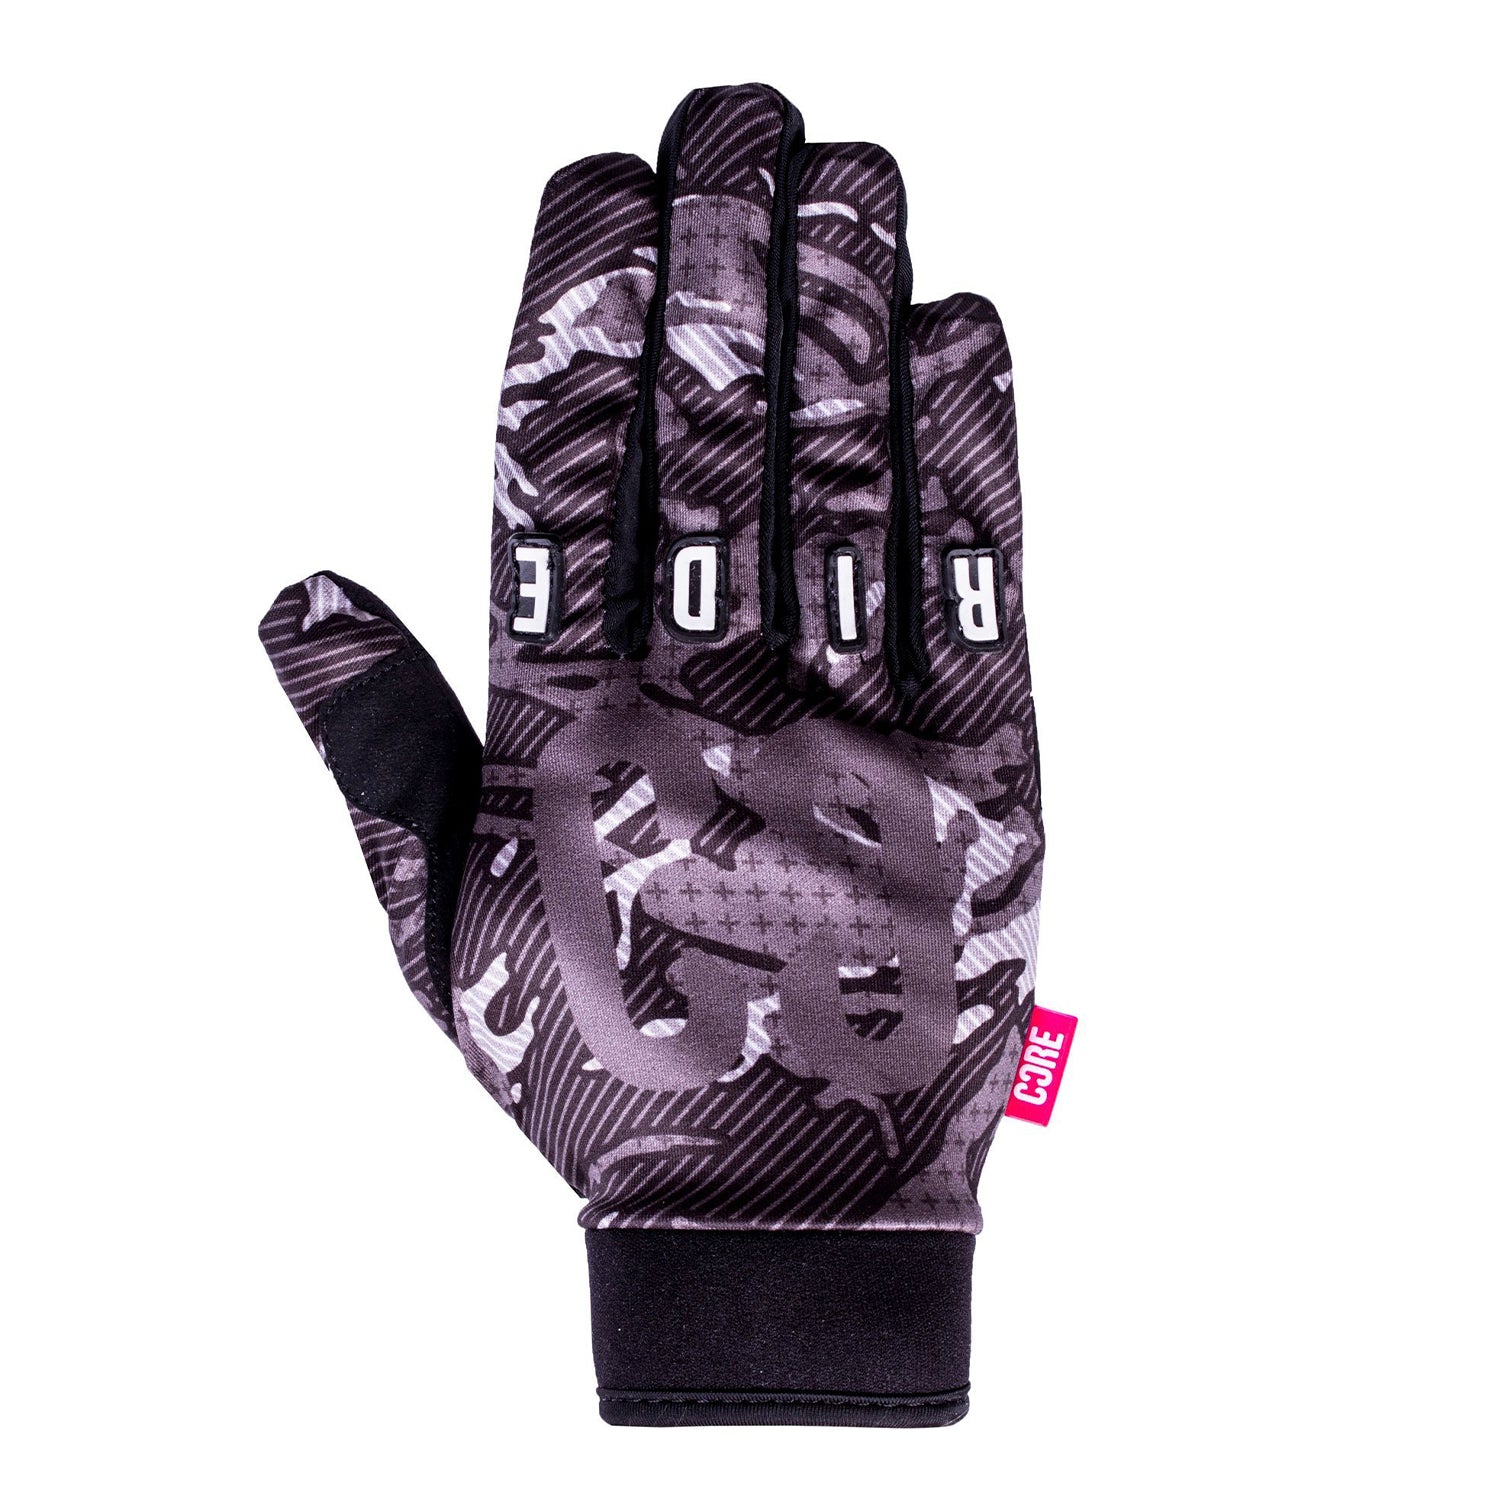 CORE Protection Gloves SR - Black Camo - Prime Delux Store